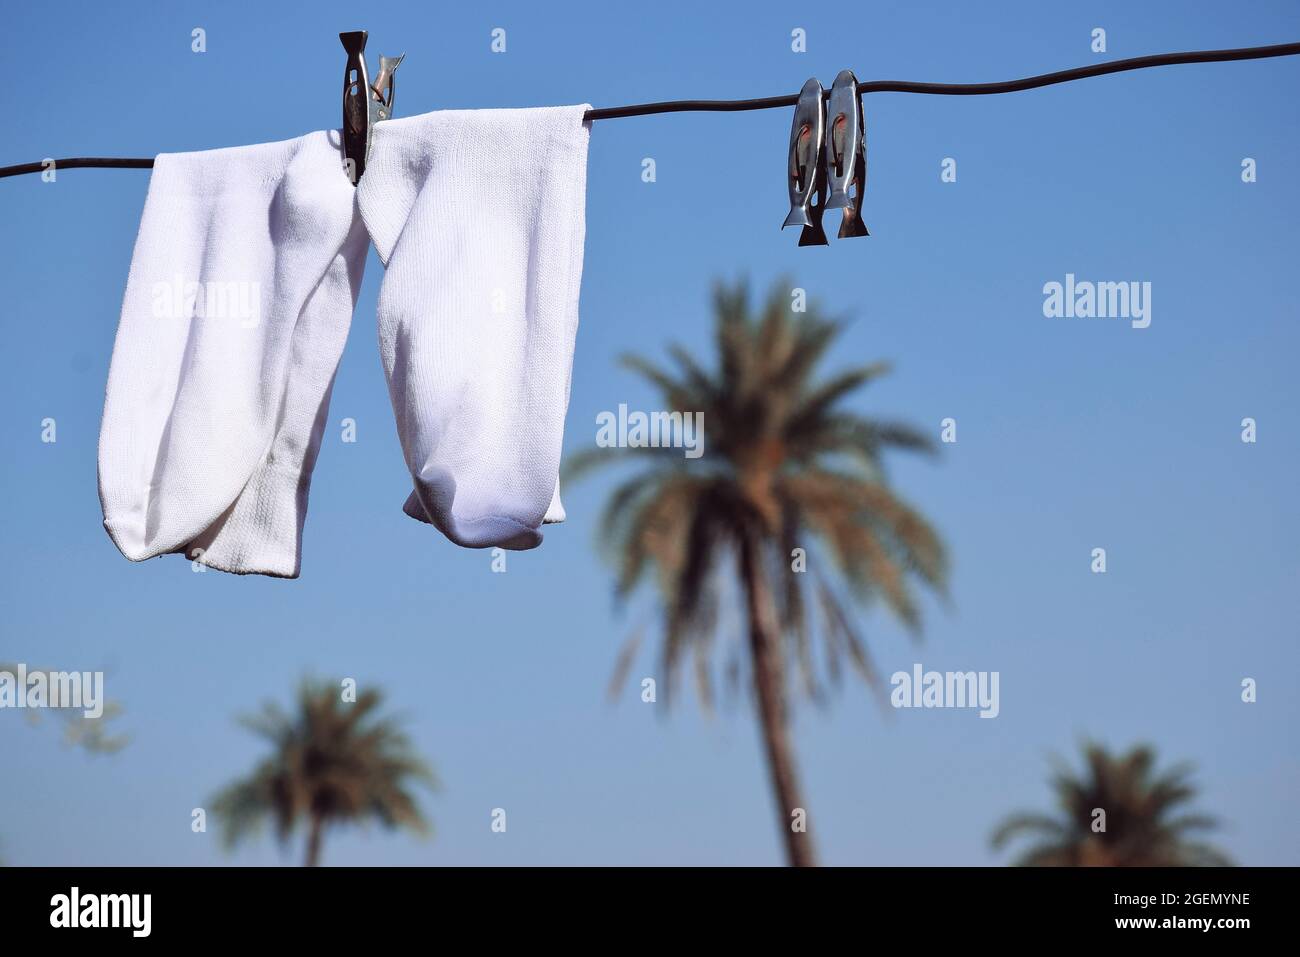 Weiße Socken hingen am Draht, blauer Himmel und Palmen im Hintergrund Stockfoto